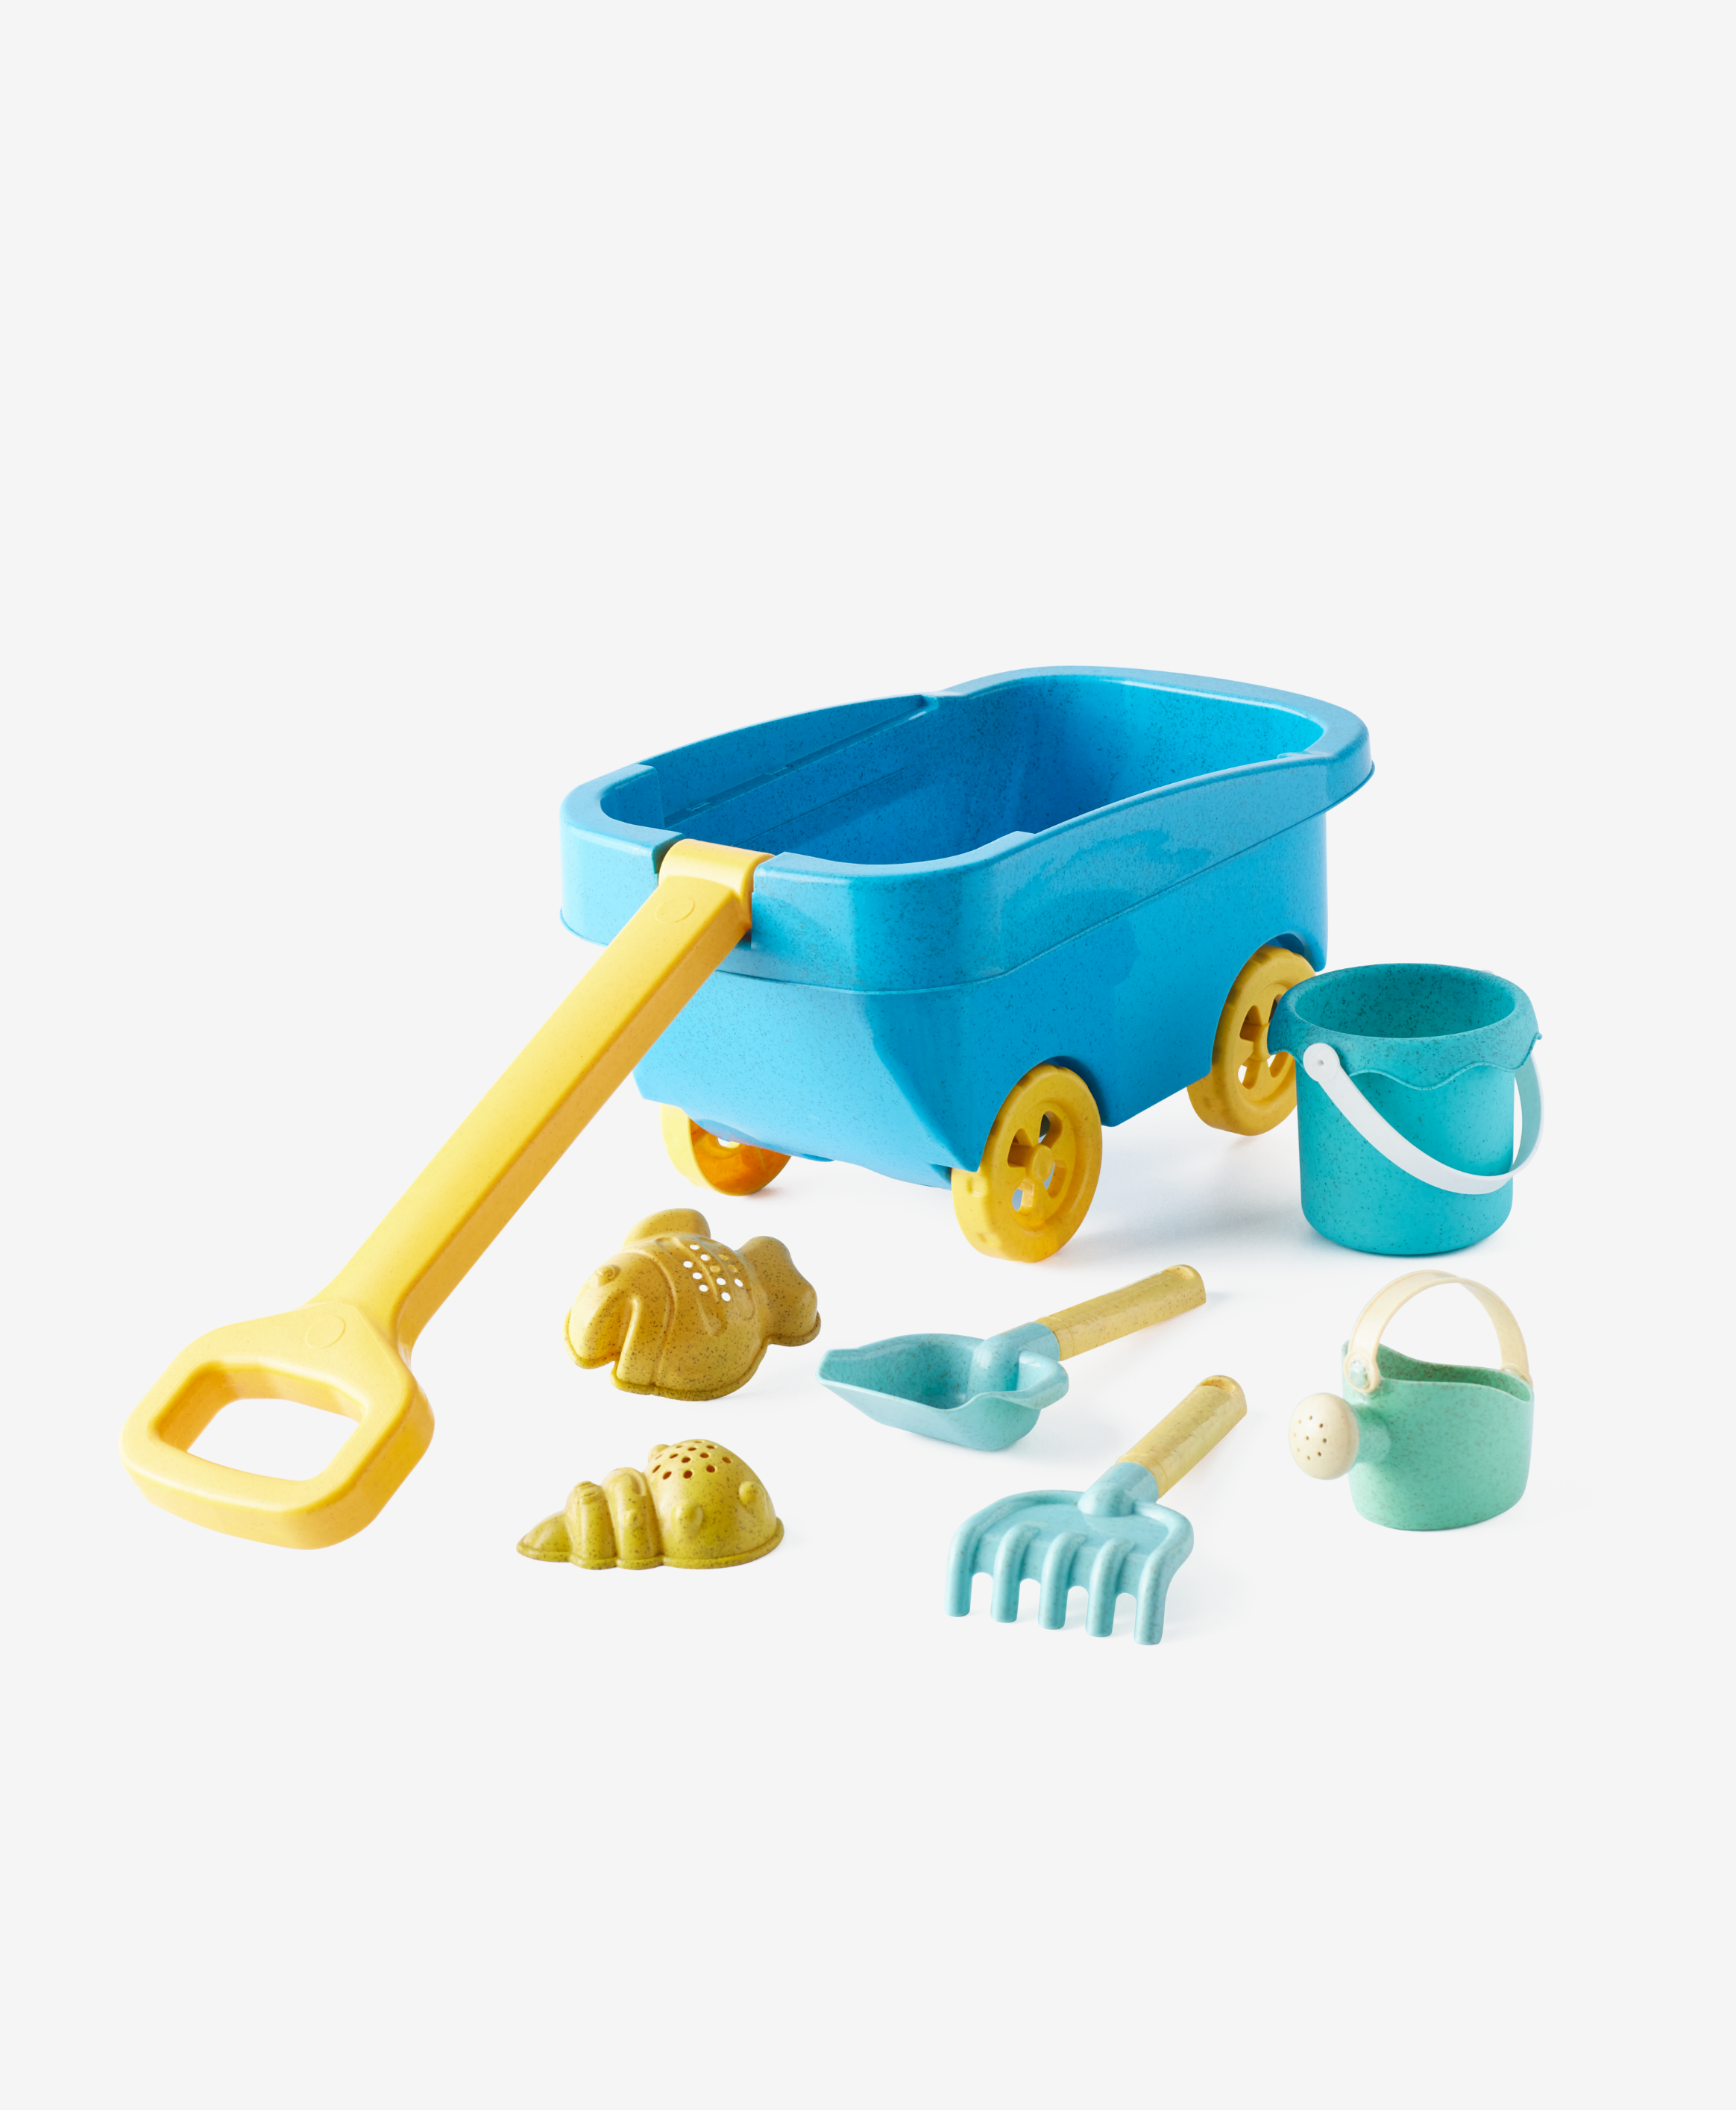 Sandspielzeug-Set, 7-teilig, blau, gelb